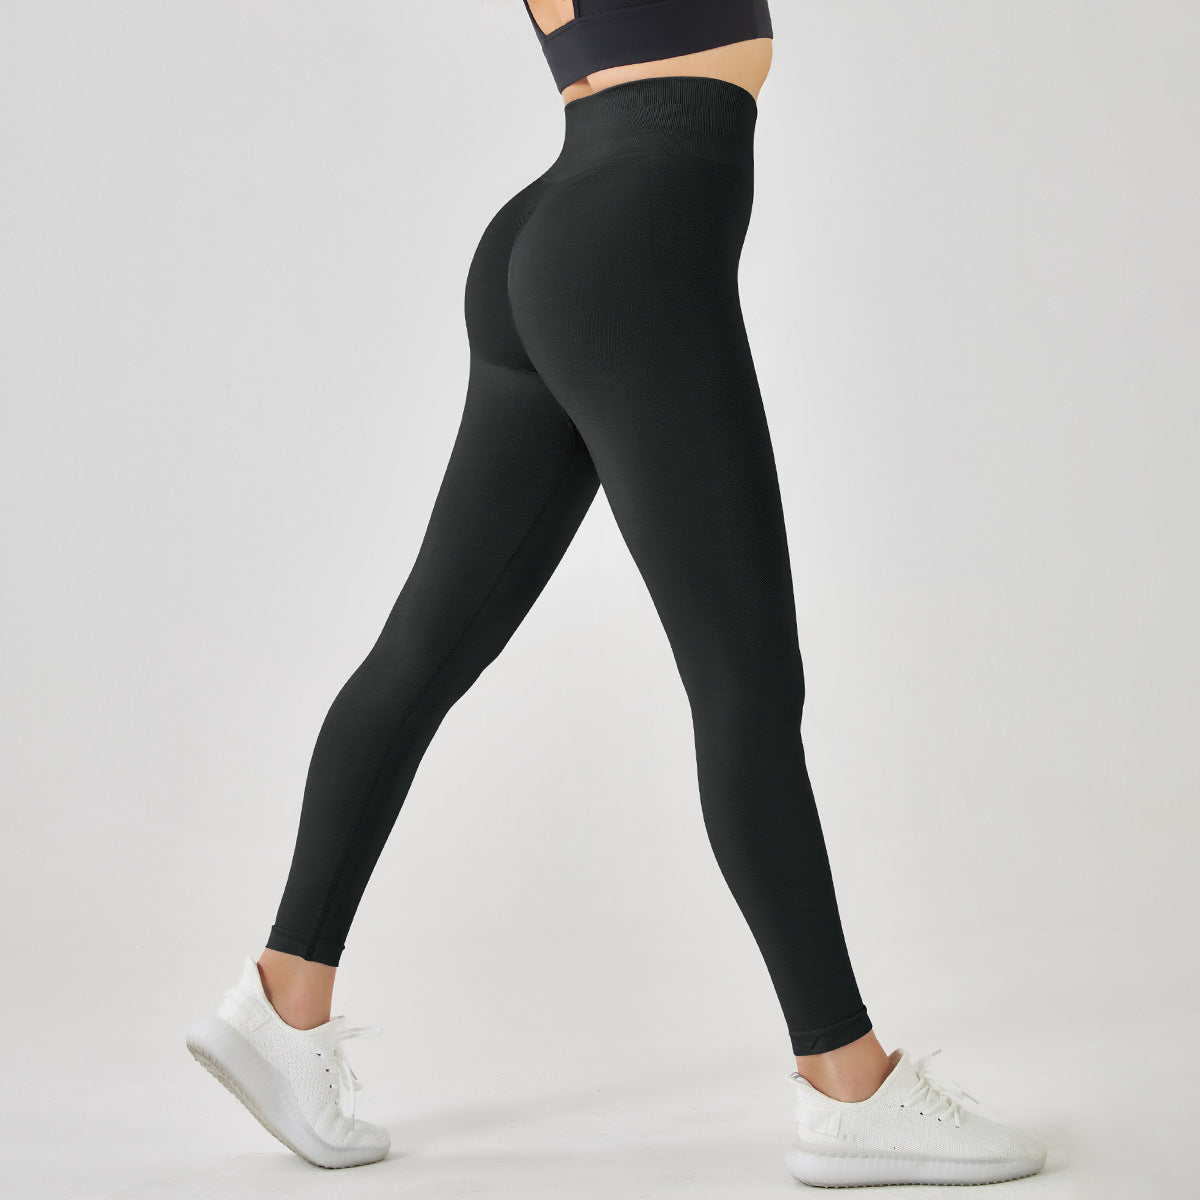 2023 New Seamless High Waist Hip Lifting Yoga Pants